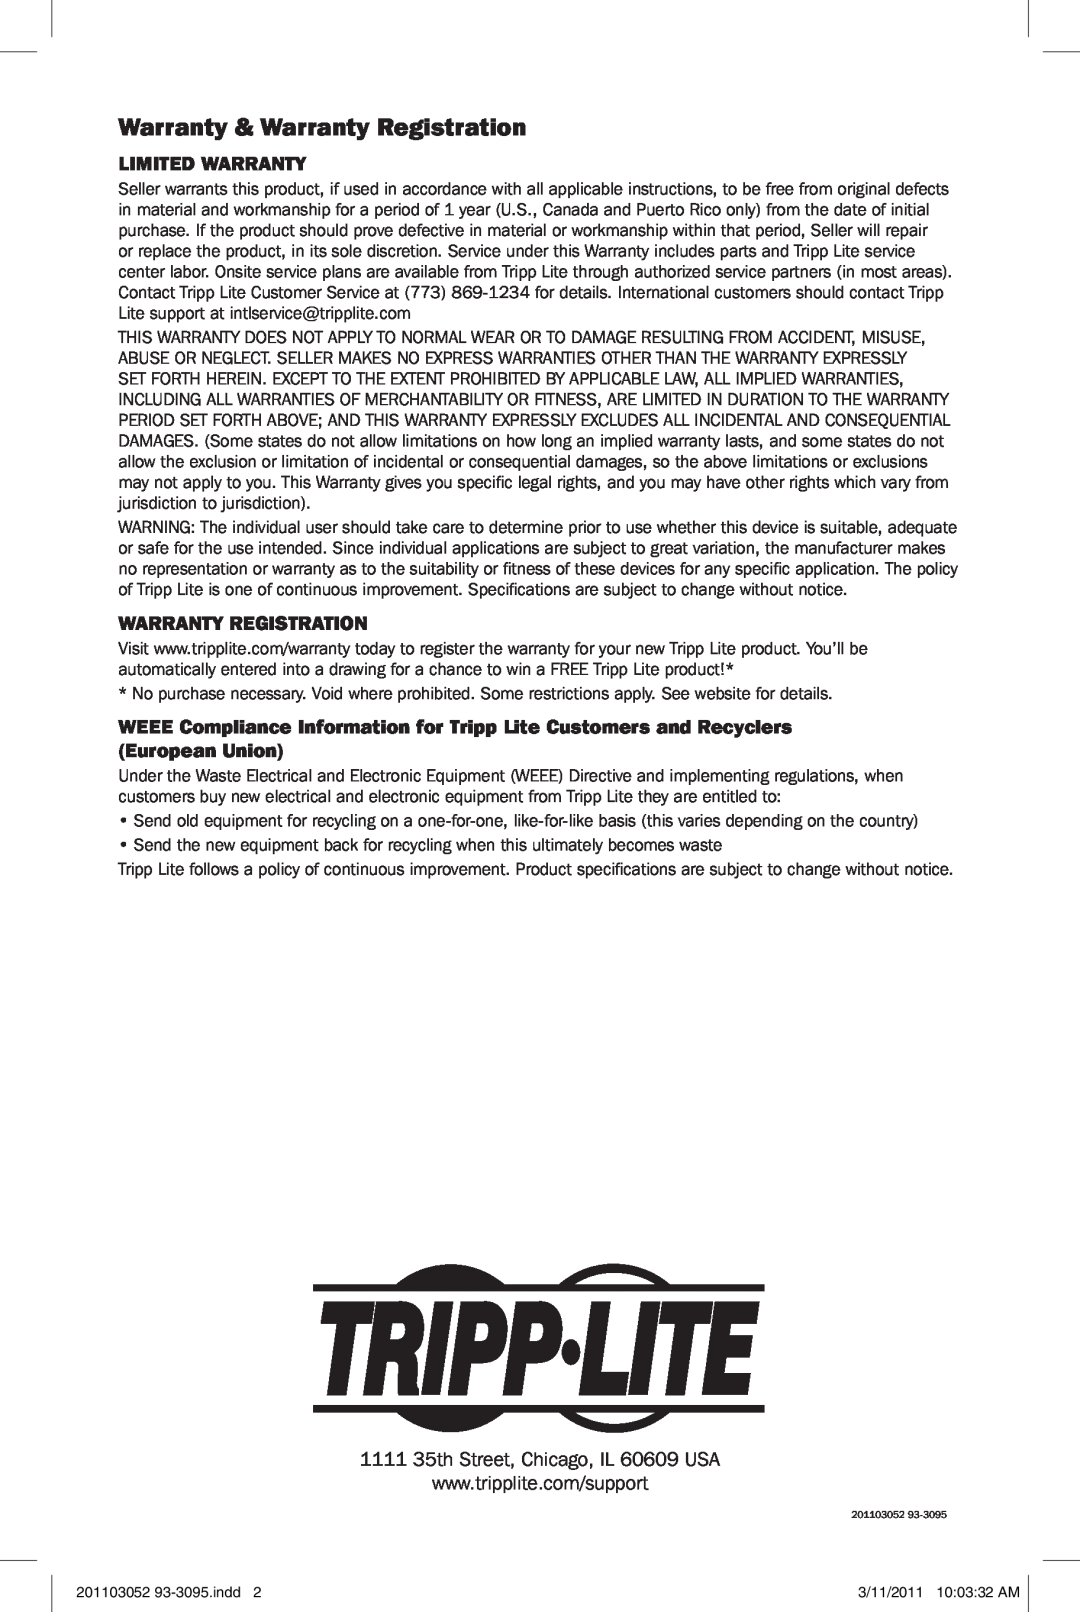 Tripp Lite U236-000-R quick start Warranty & Warranty Registration, Limited Warranty 